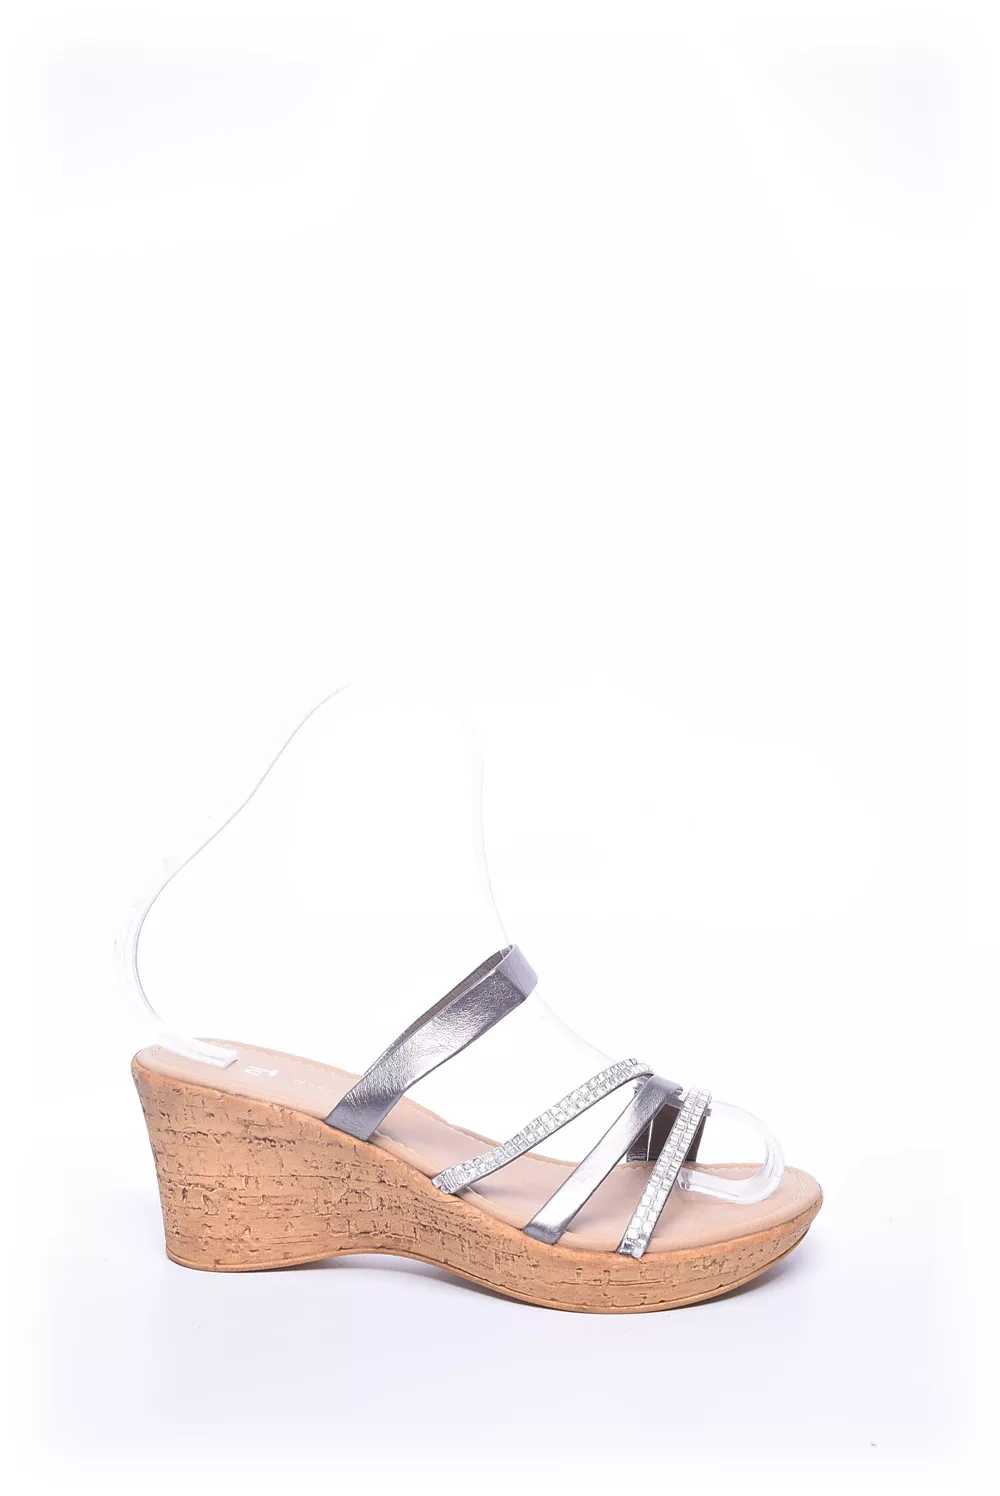 Sandale dama [0]